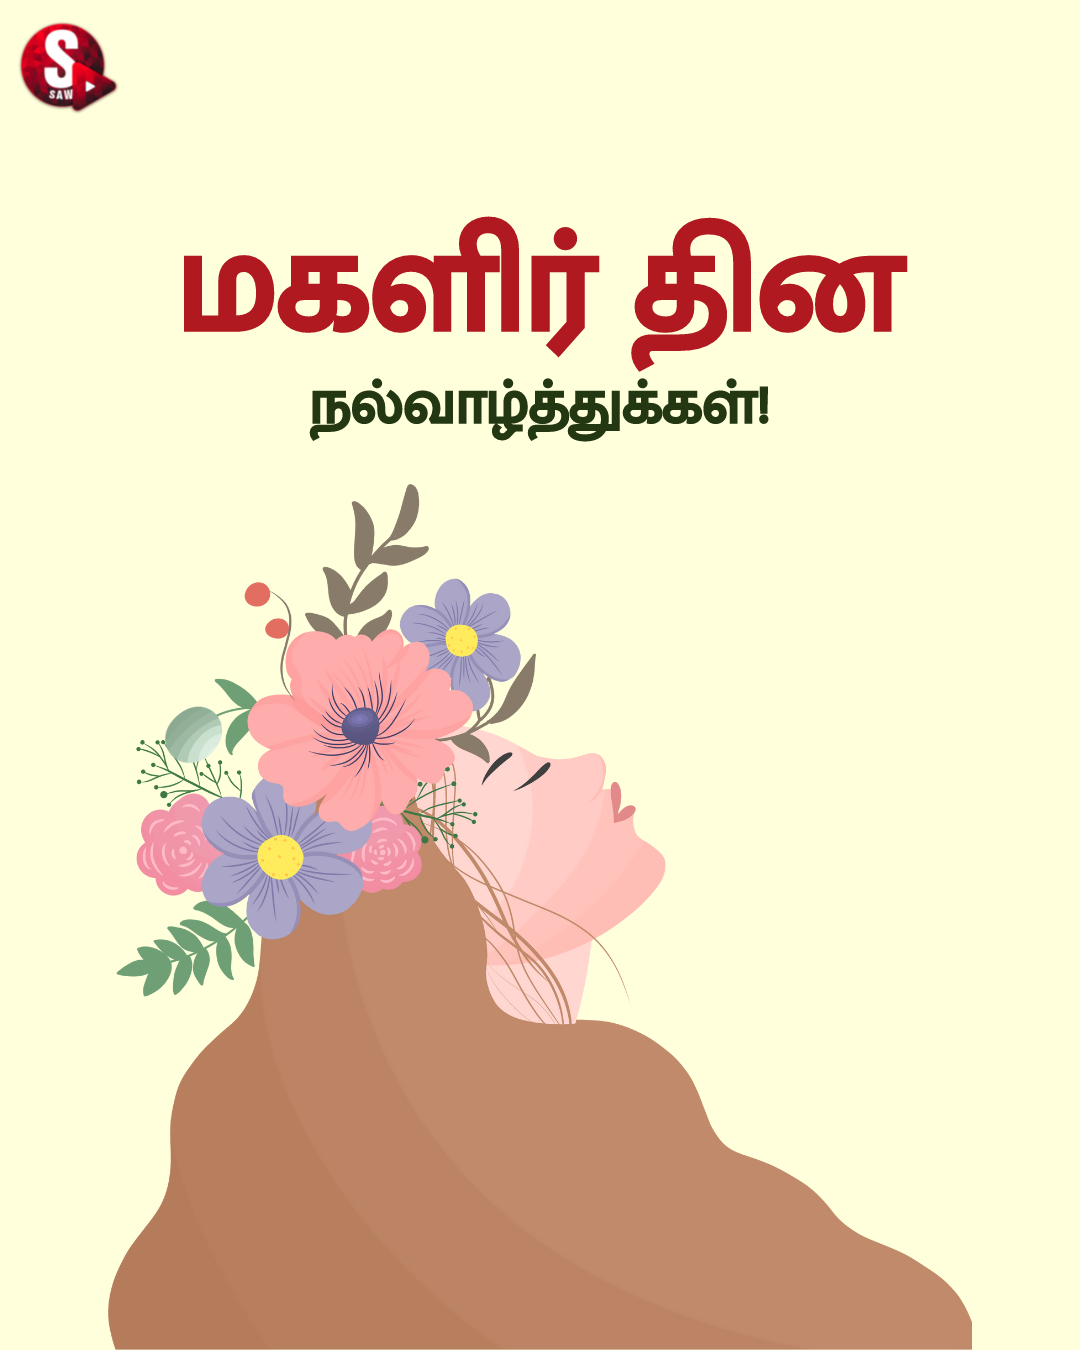 மகளிர் தின சிறப்பு கவிதை 2023! | Magalir Thinam 2023 Kavithai in Tamil